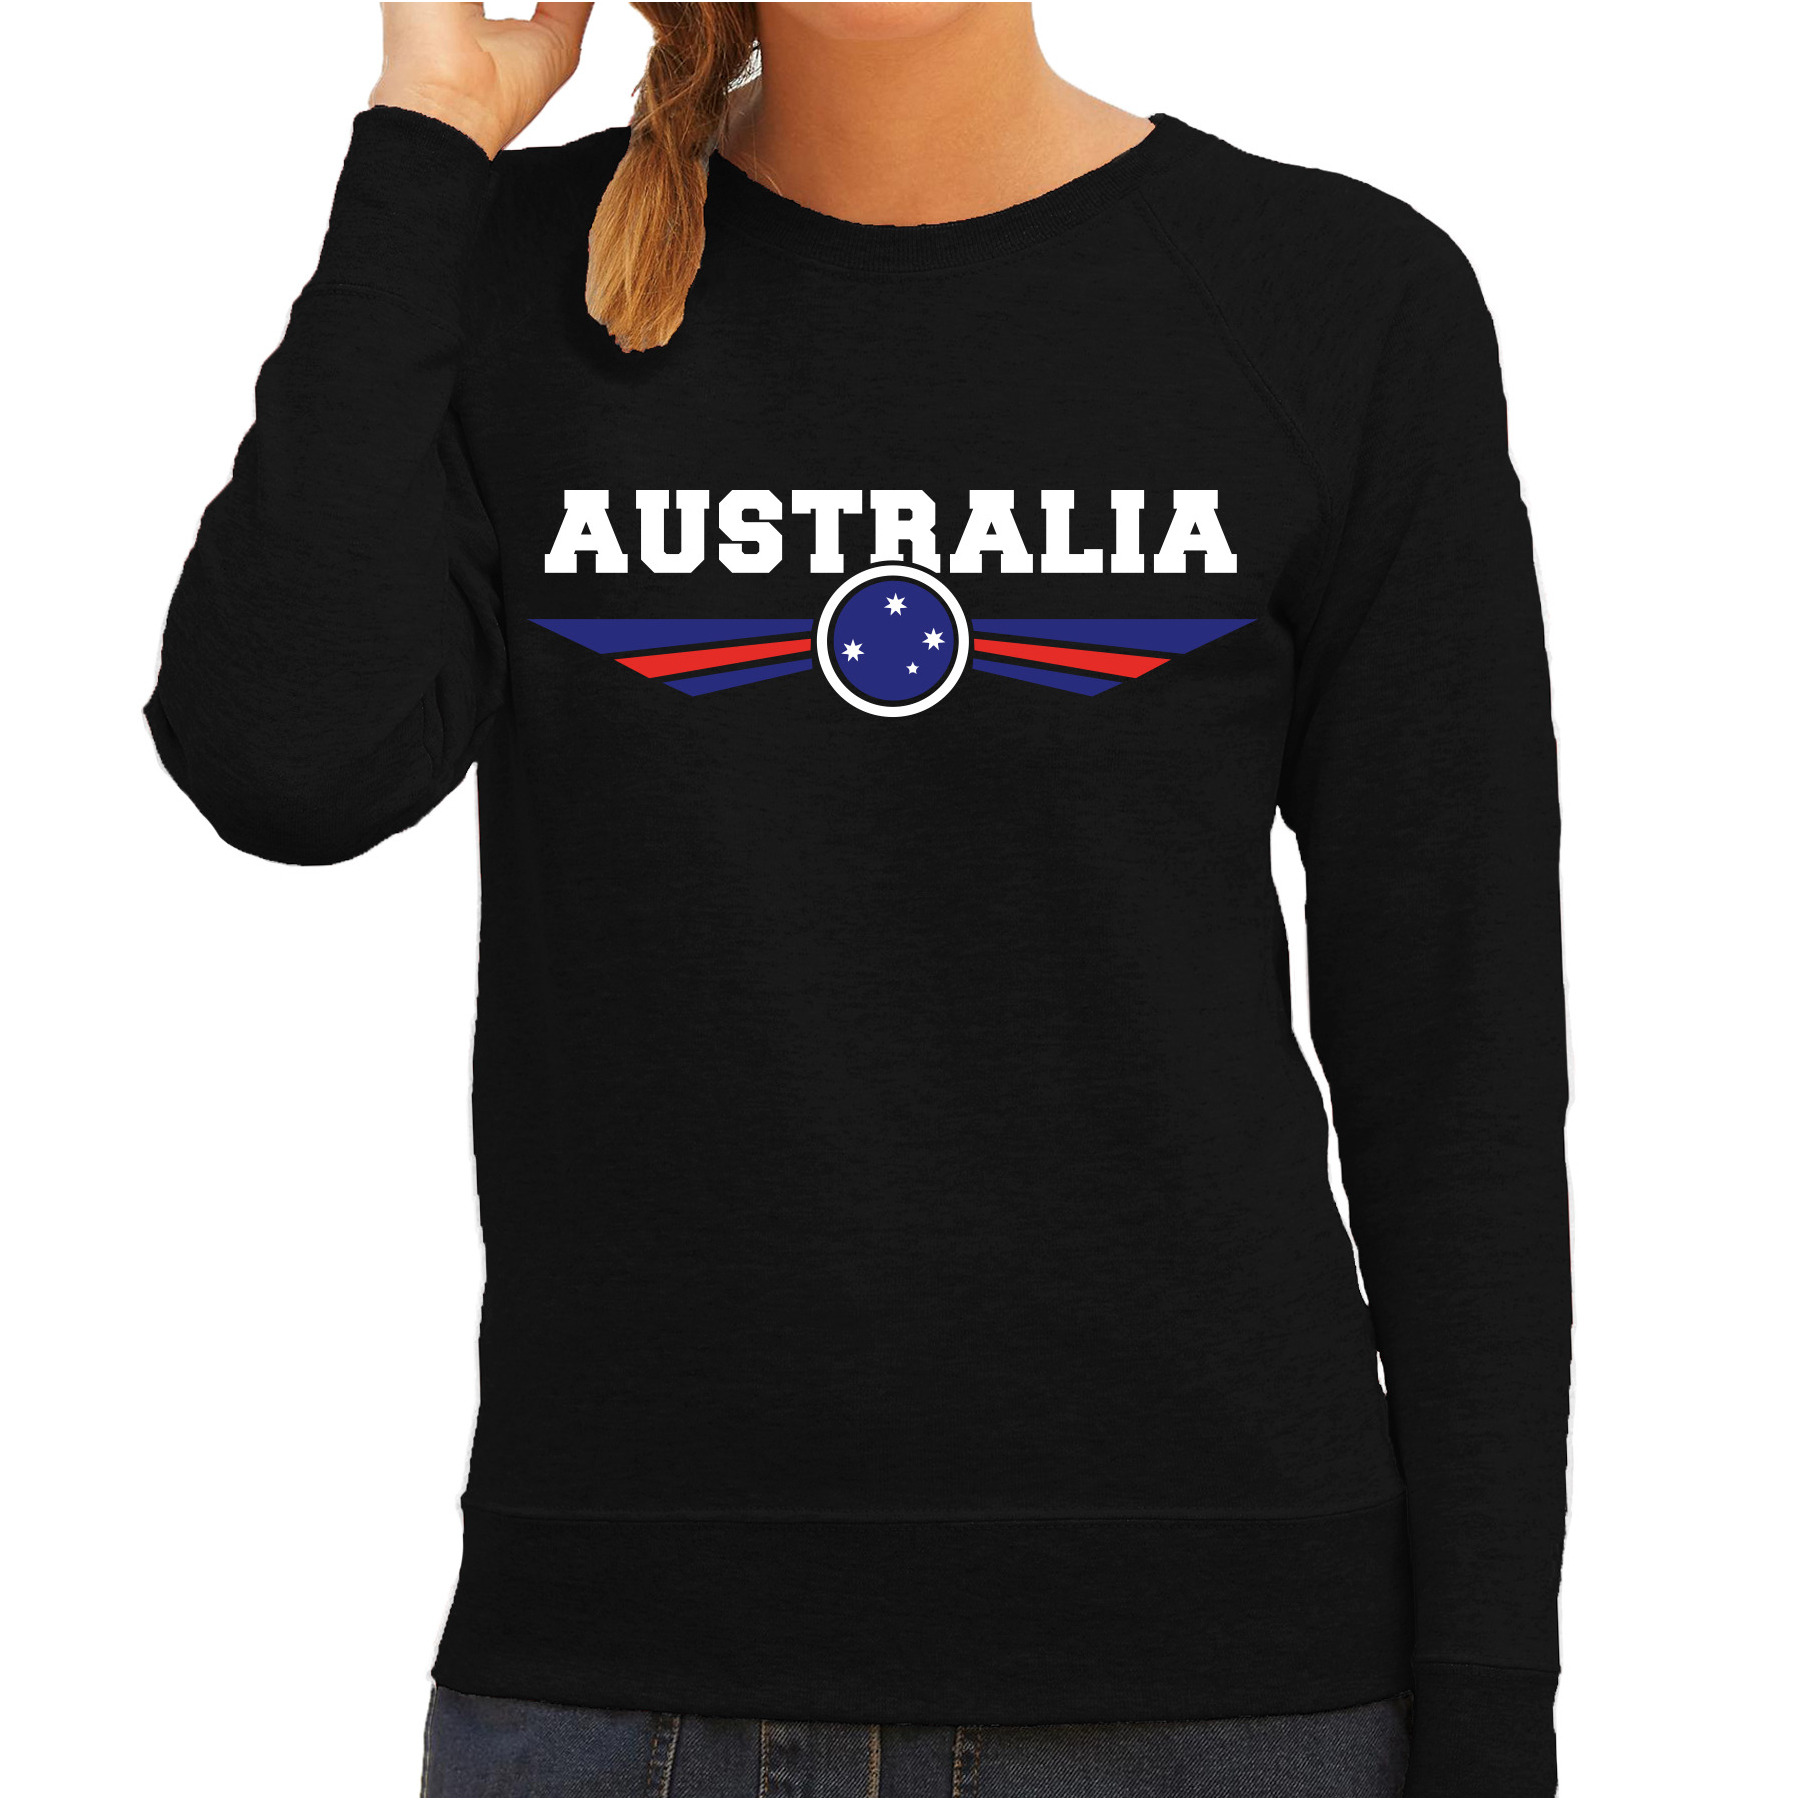 Australie - Australia landen sweater zwart dames